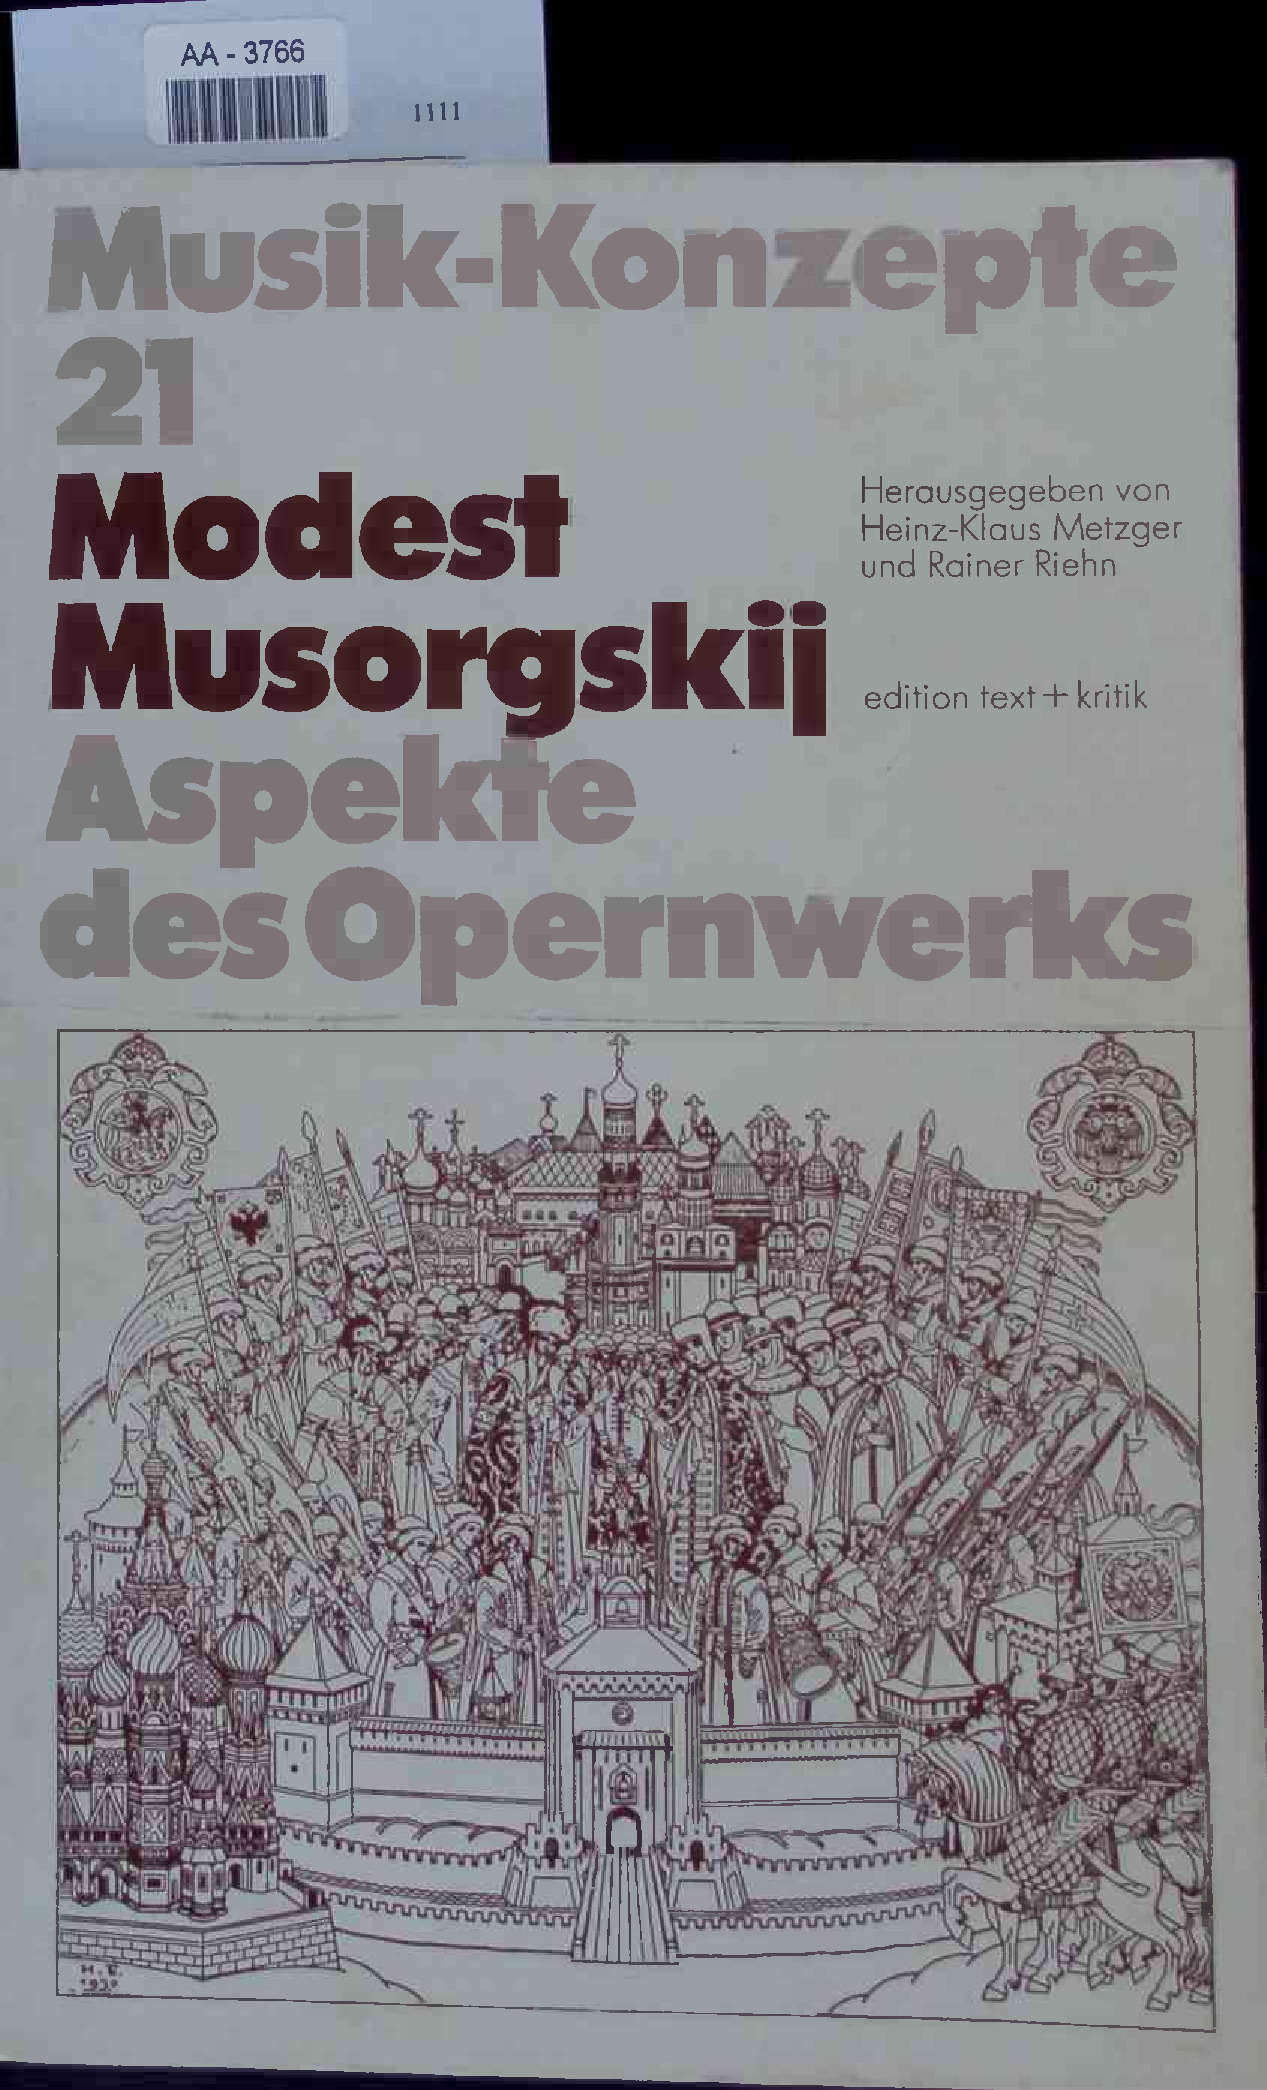 Modest Musorgskij. Aspekte des Opernwerks. Musik-Konzepte 21 - [Hrsg.], Heinz-Klaus Metzger